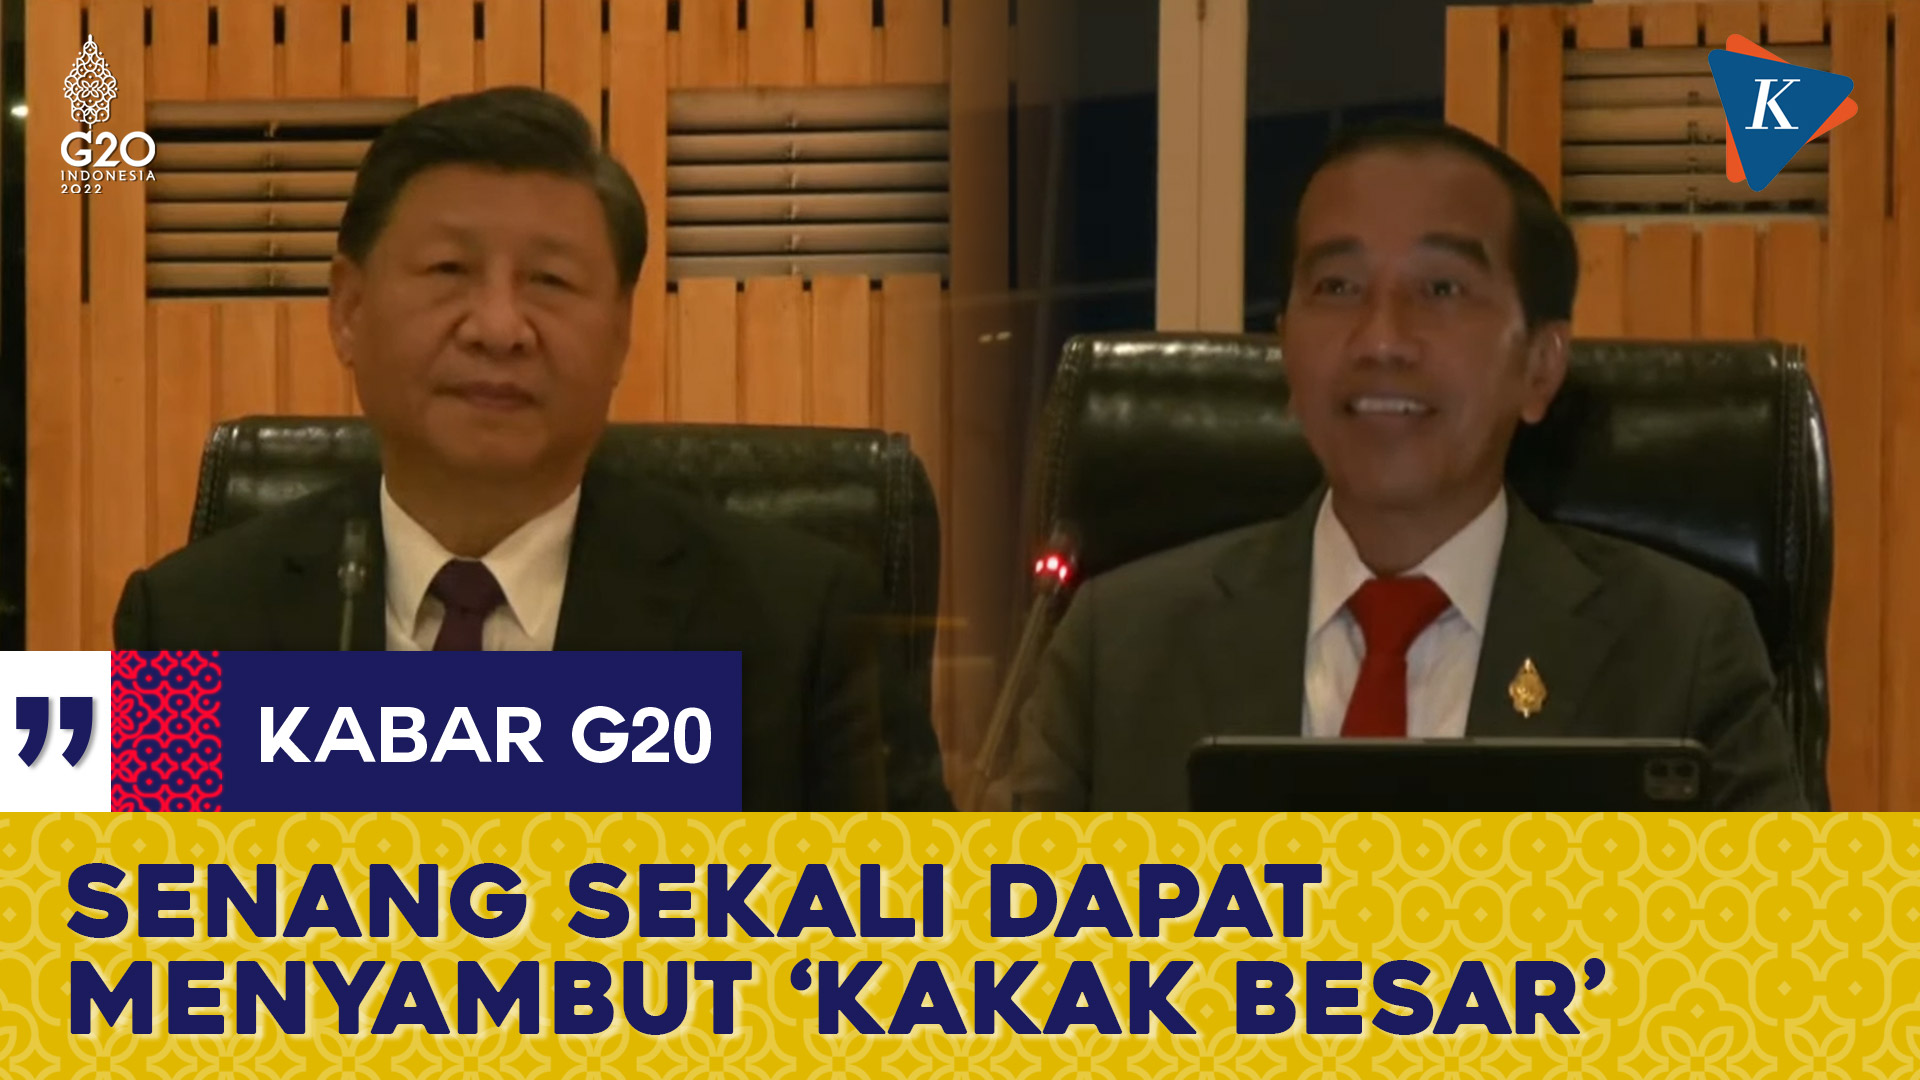 Gelar Pertemuan Bilateral, Jokowi Panggil Xi Jinping dengan Sebutan “Kakak Besar”